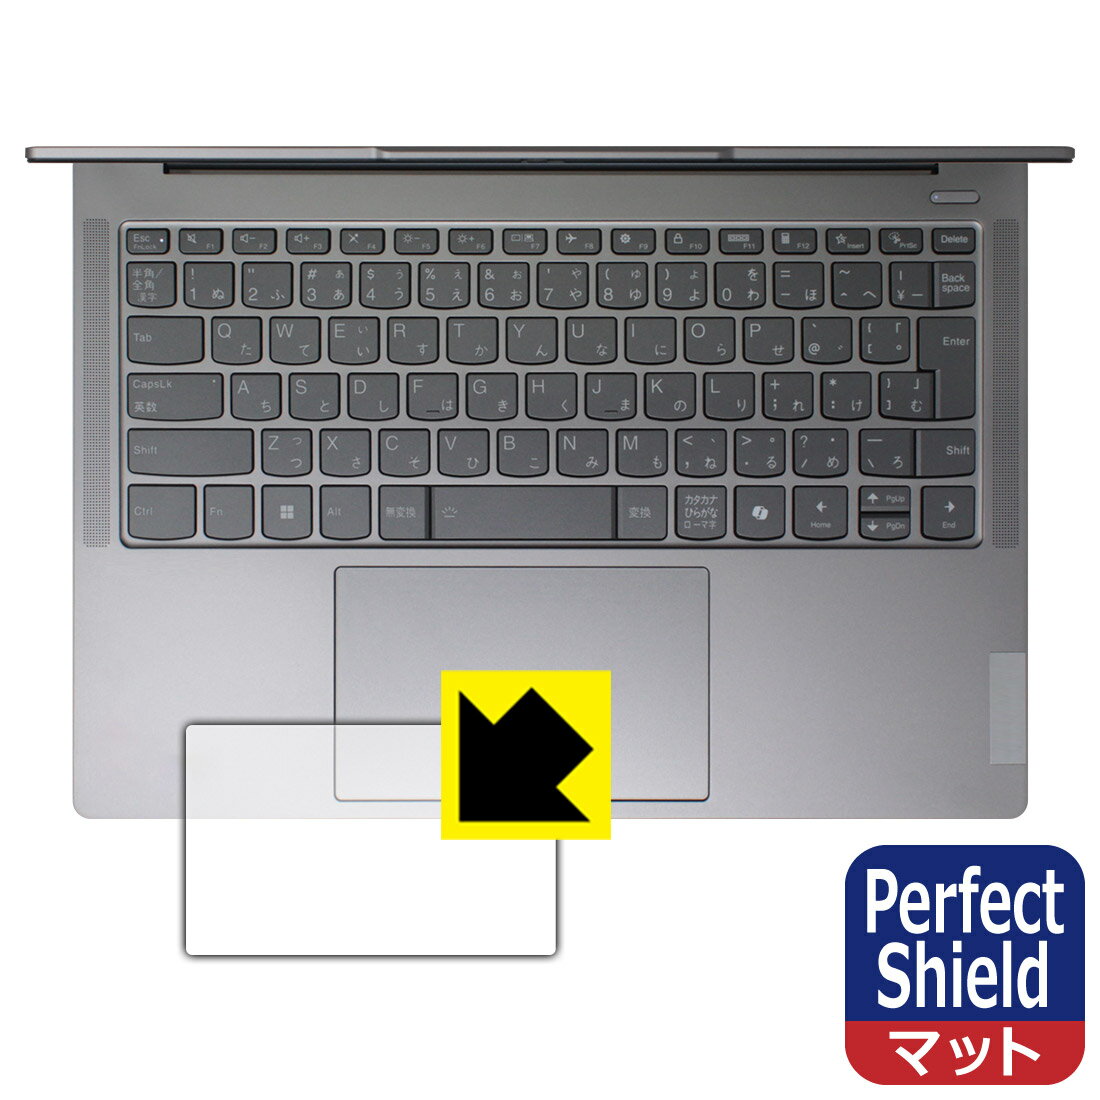 対応機種●対応機種 : Lenovo IdeaPad Pro 5 Gen 9 (14型) / IdeaPad Pro 5i Gen 9 (14型)専用の商品です。●製品内容 : タッチパッド用フィルム3枚・クリーニングワイプ1個●「Perfect Shield」は画面の反射を抑え、指のすべりもなめらかな指紋や皮脂汚れがつきにくい『アンチグレアタイプ(非光沢)のタッチパッド保護フィルム』●安心の国産素材を使用。日本国内の自社工場で製造し出荷しています。 ★貼り付け失敗交換サービス対象商品★ 国内自社工場製造・発送だからできる 安心の製品保証とサポート ■製品保証 お届けした製品が誤っていたり、不具合があった場合などには、お届けから1ヶ月以内にメールにてお問い合わせください。交換等対応させていただきます。[キャンセル・返品（返金・交換）について] ■■貼り付け失敗時の交換サービス■■貼り付けに失敗しても1回だけ無償交換ができます。(失敗したフィルムをお送りいただき、新品に無償交換します。往復の送料のみお客様にご負担をお願いいたします。詳しくは製品に同封の紙をご確認ください) ■■保護フィルム貼り付け代行サービス■■保護フィルムの貼り付け作業に自信がない方には、PDA工房で貼り付け作業を代行いたします。(PDA工房の保護フィルムのみが対象です。詳しくは製品に同封の紙をご確認ください) Perfect Shield【反射低減】保護フィルム 素材説明 ■画面の映り込みを抑える反射防止タイプ！表面に微細な凹凸を作ることにより、外光を乱反射させギラツキを抑える「アンチグレア加工」がされております。屋外での太陽光の映り込み、屋内でも蛍光灯などの映り込みが気になるシーンが多い方におすすめです。また、指紋がついた場合でも目立ちにくいという特長があります。■防指紋のハードコート！さらさらな指ざわり！指滑りはさらさらな使用感でストレスのない操作・入力が可能です。ハードコート加工がされており、キズや擦れに強くなっています。簡単にキズがつかず長くご利用いただけます。反射防止のアンチグレア加工で指紋が目立ちにくい上、表面は防汚コーティングがされており、皮脂や汚れがつきにくく、また、落ちやすくなっています。■気泡の入りにくい特殊な自己吸着タイプ接着面は気泡の入りにくい特殊な自己吸着タイプです。素材に柔軟性があり、貼り付け作業も簡単にできます。また、はがすときにガラス製フィルムのように割れてしまうことはありません。貼り直しが何度でもできるので、正しい位置へ貼り付けられるまでやり直すことができます。■安心の日本製最高級グレードの国産素材を日本国内の弊社工場で加工している完全な Made in Japan です。安心の品質をお届けします。 【ポスト投函送料無料】商品は【ポスト投函発送 (追跡可能メール便)】で発送します。お急ぎ、配達日時を指定されたい方は以下のクーポンを同時購入ください。【お急ぎ便クーポン】　プラス110円(税込)で速達扱いでの発送。お届けはポストへの投函となります。【配達日時指定クーポン】　プラス550円(税込)で配達日時を指定し、宅配便で発送させていただきます。【お急ぎ便クーポン】はこちらをクリック【配達日時指定クーポン】はこちらをクリック